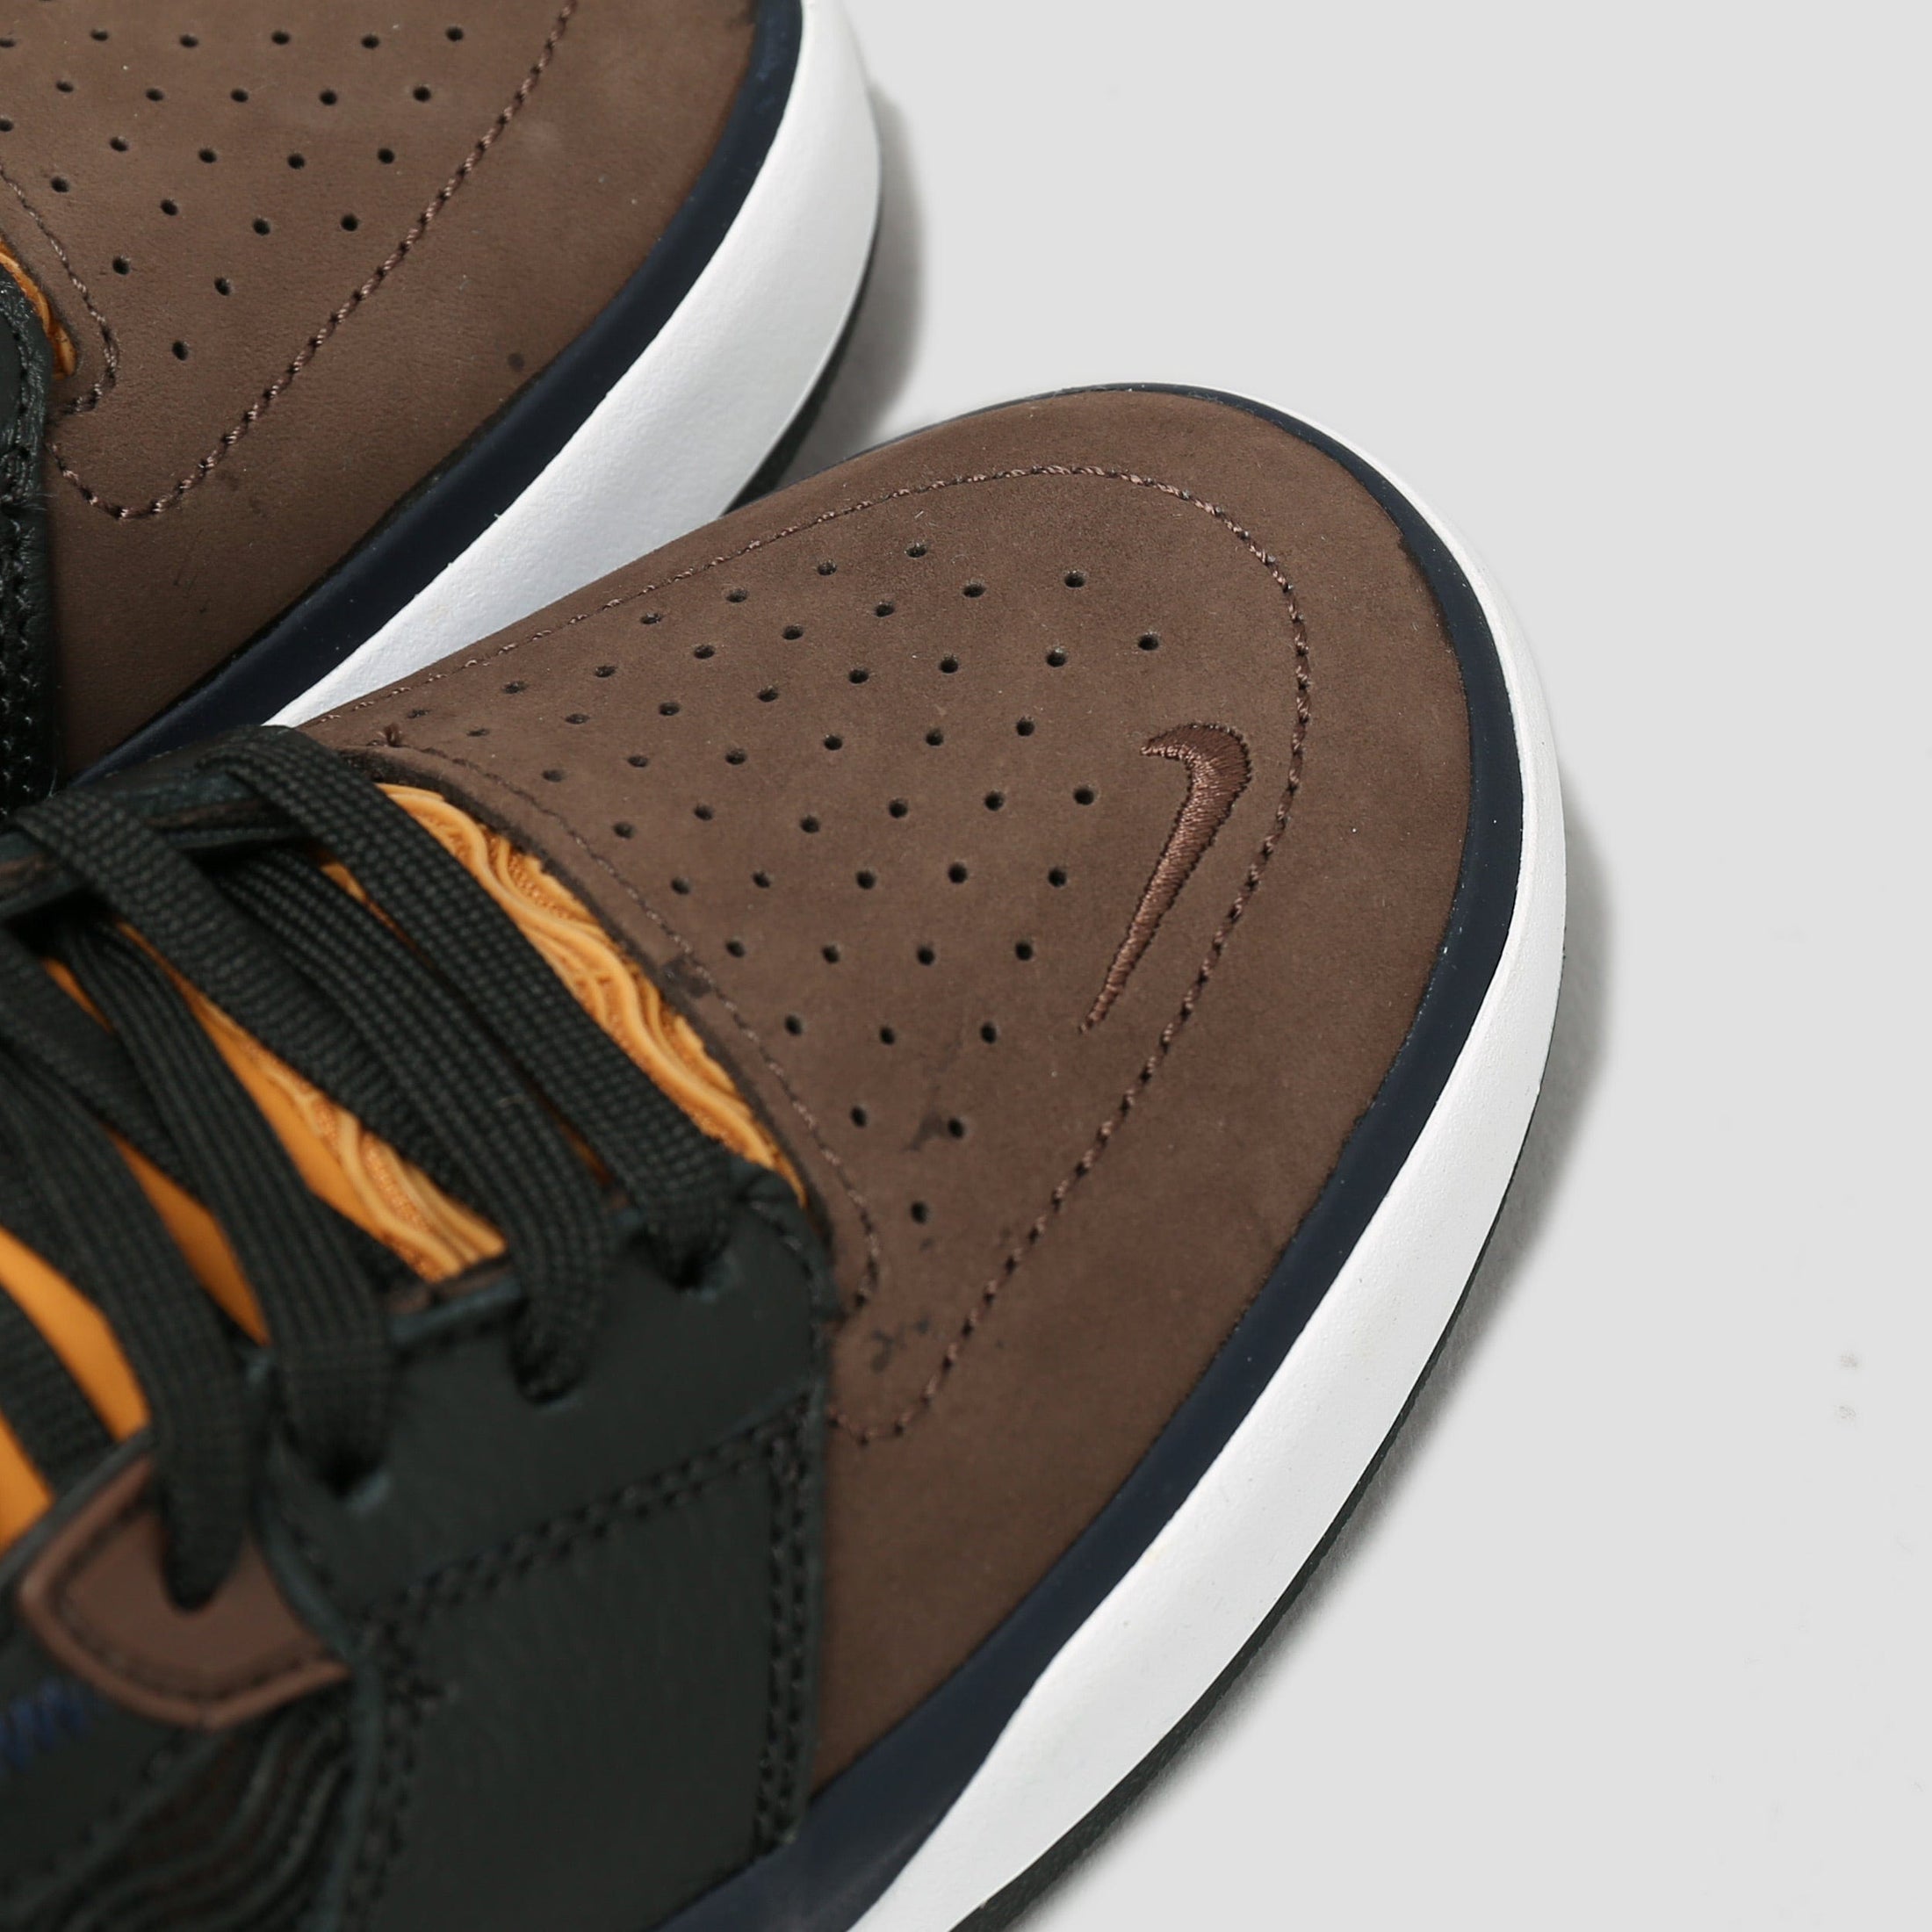 Nike SB Ishod Premium Shoes Baroque Brown / Obsidian - Black